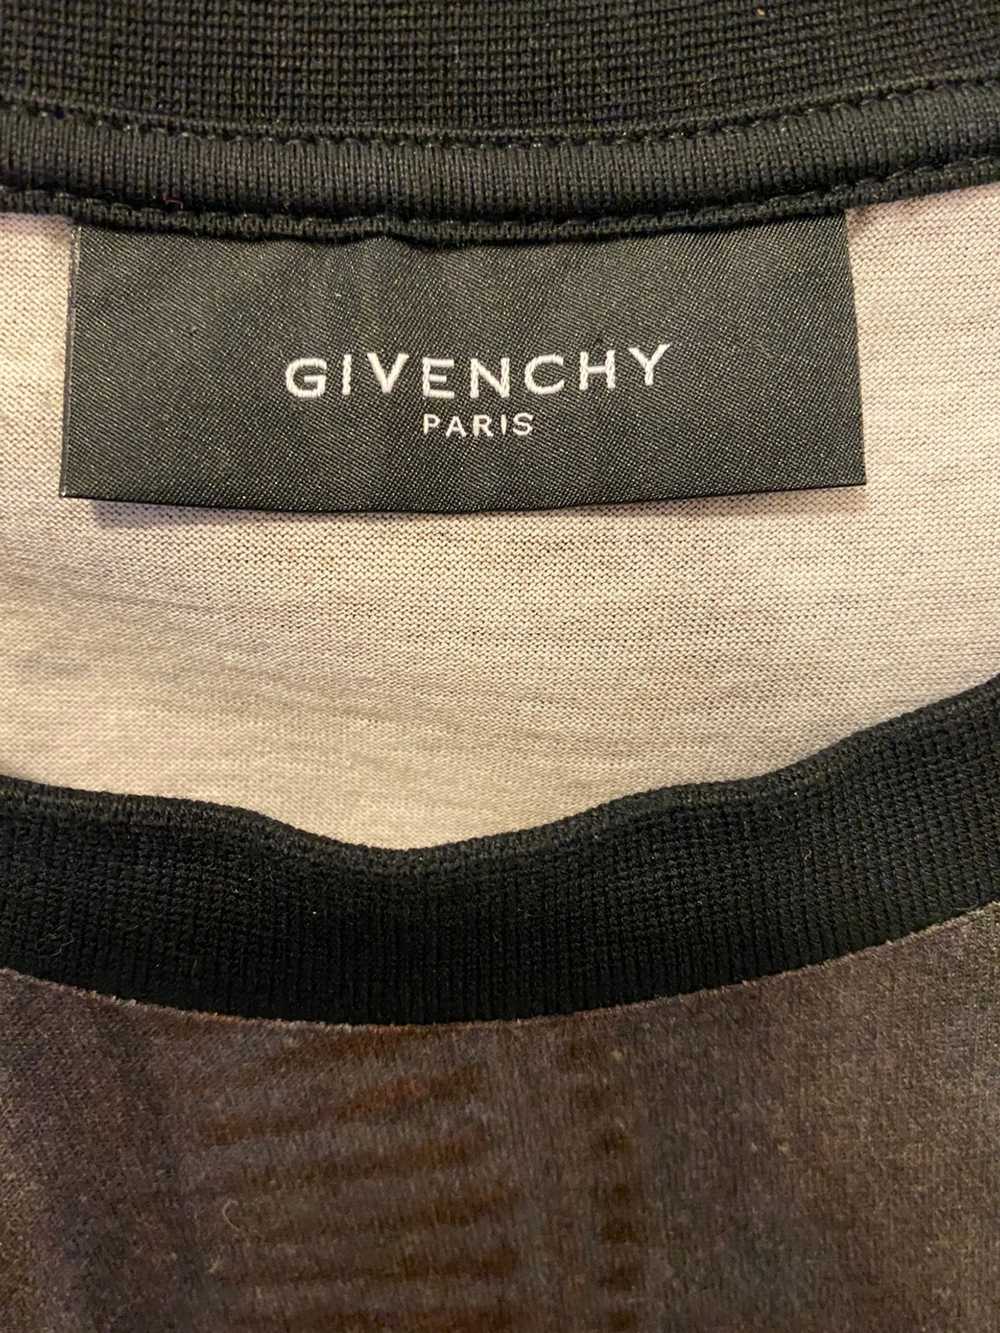 Givenchy Givenchy T-shirt - image 3